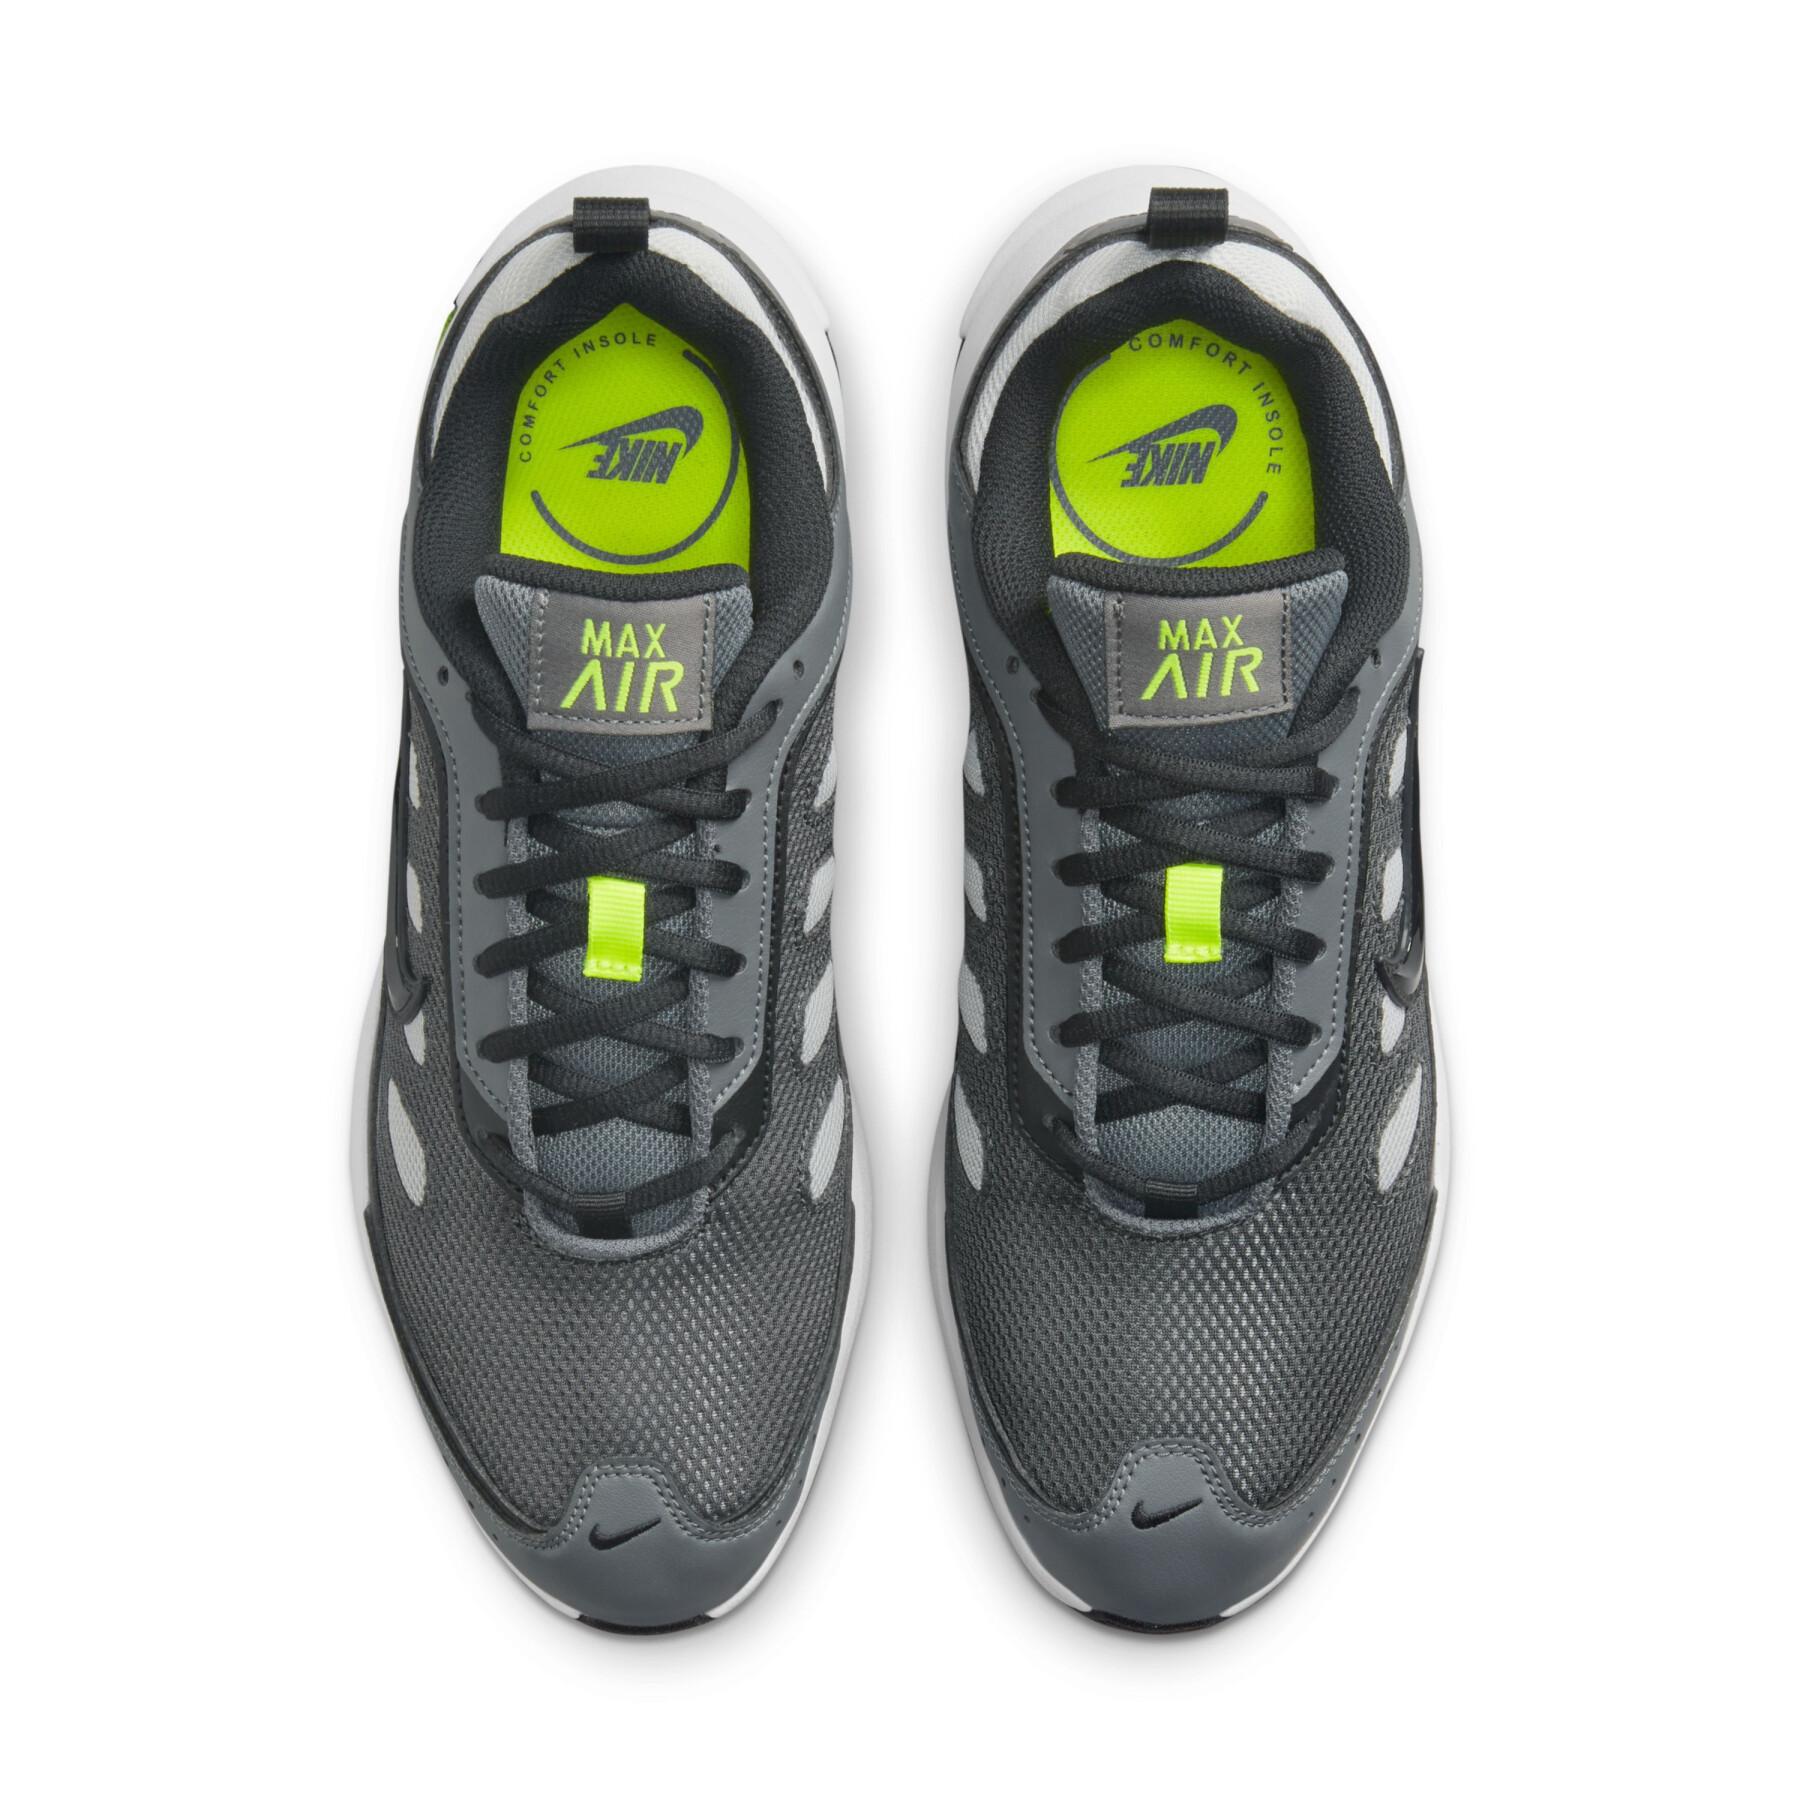 Formadores Nike Air Max AP